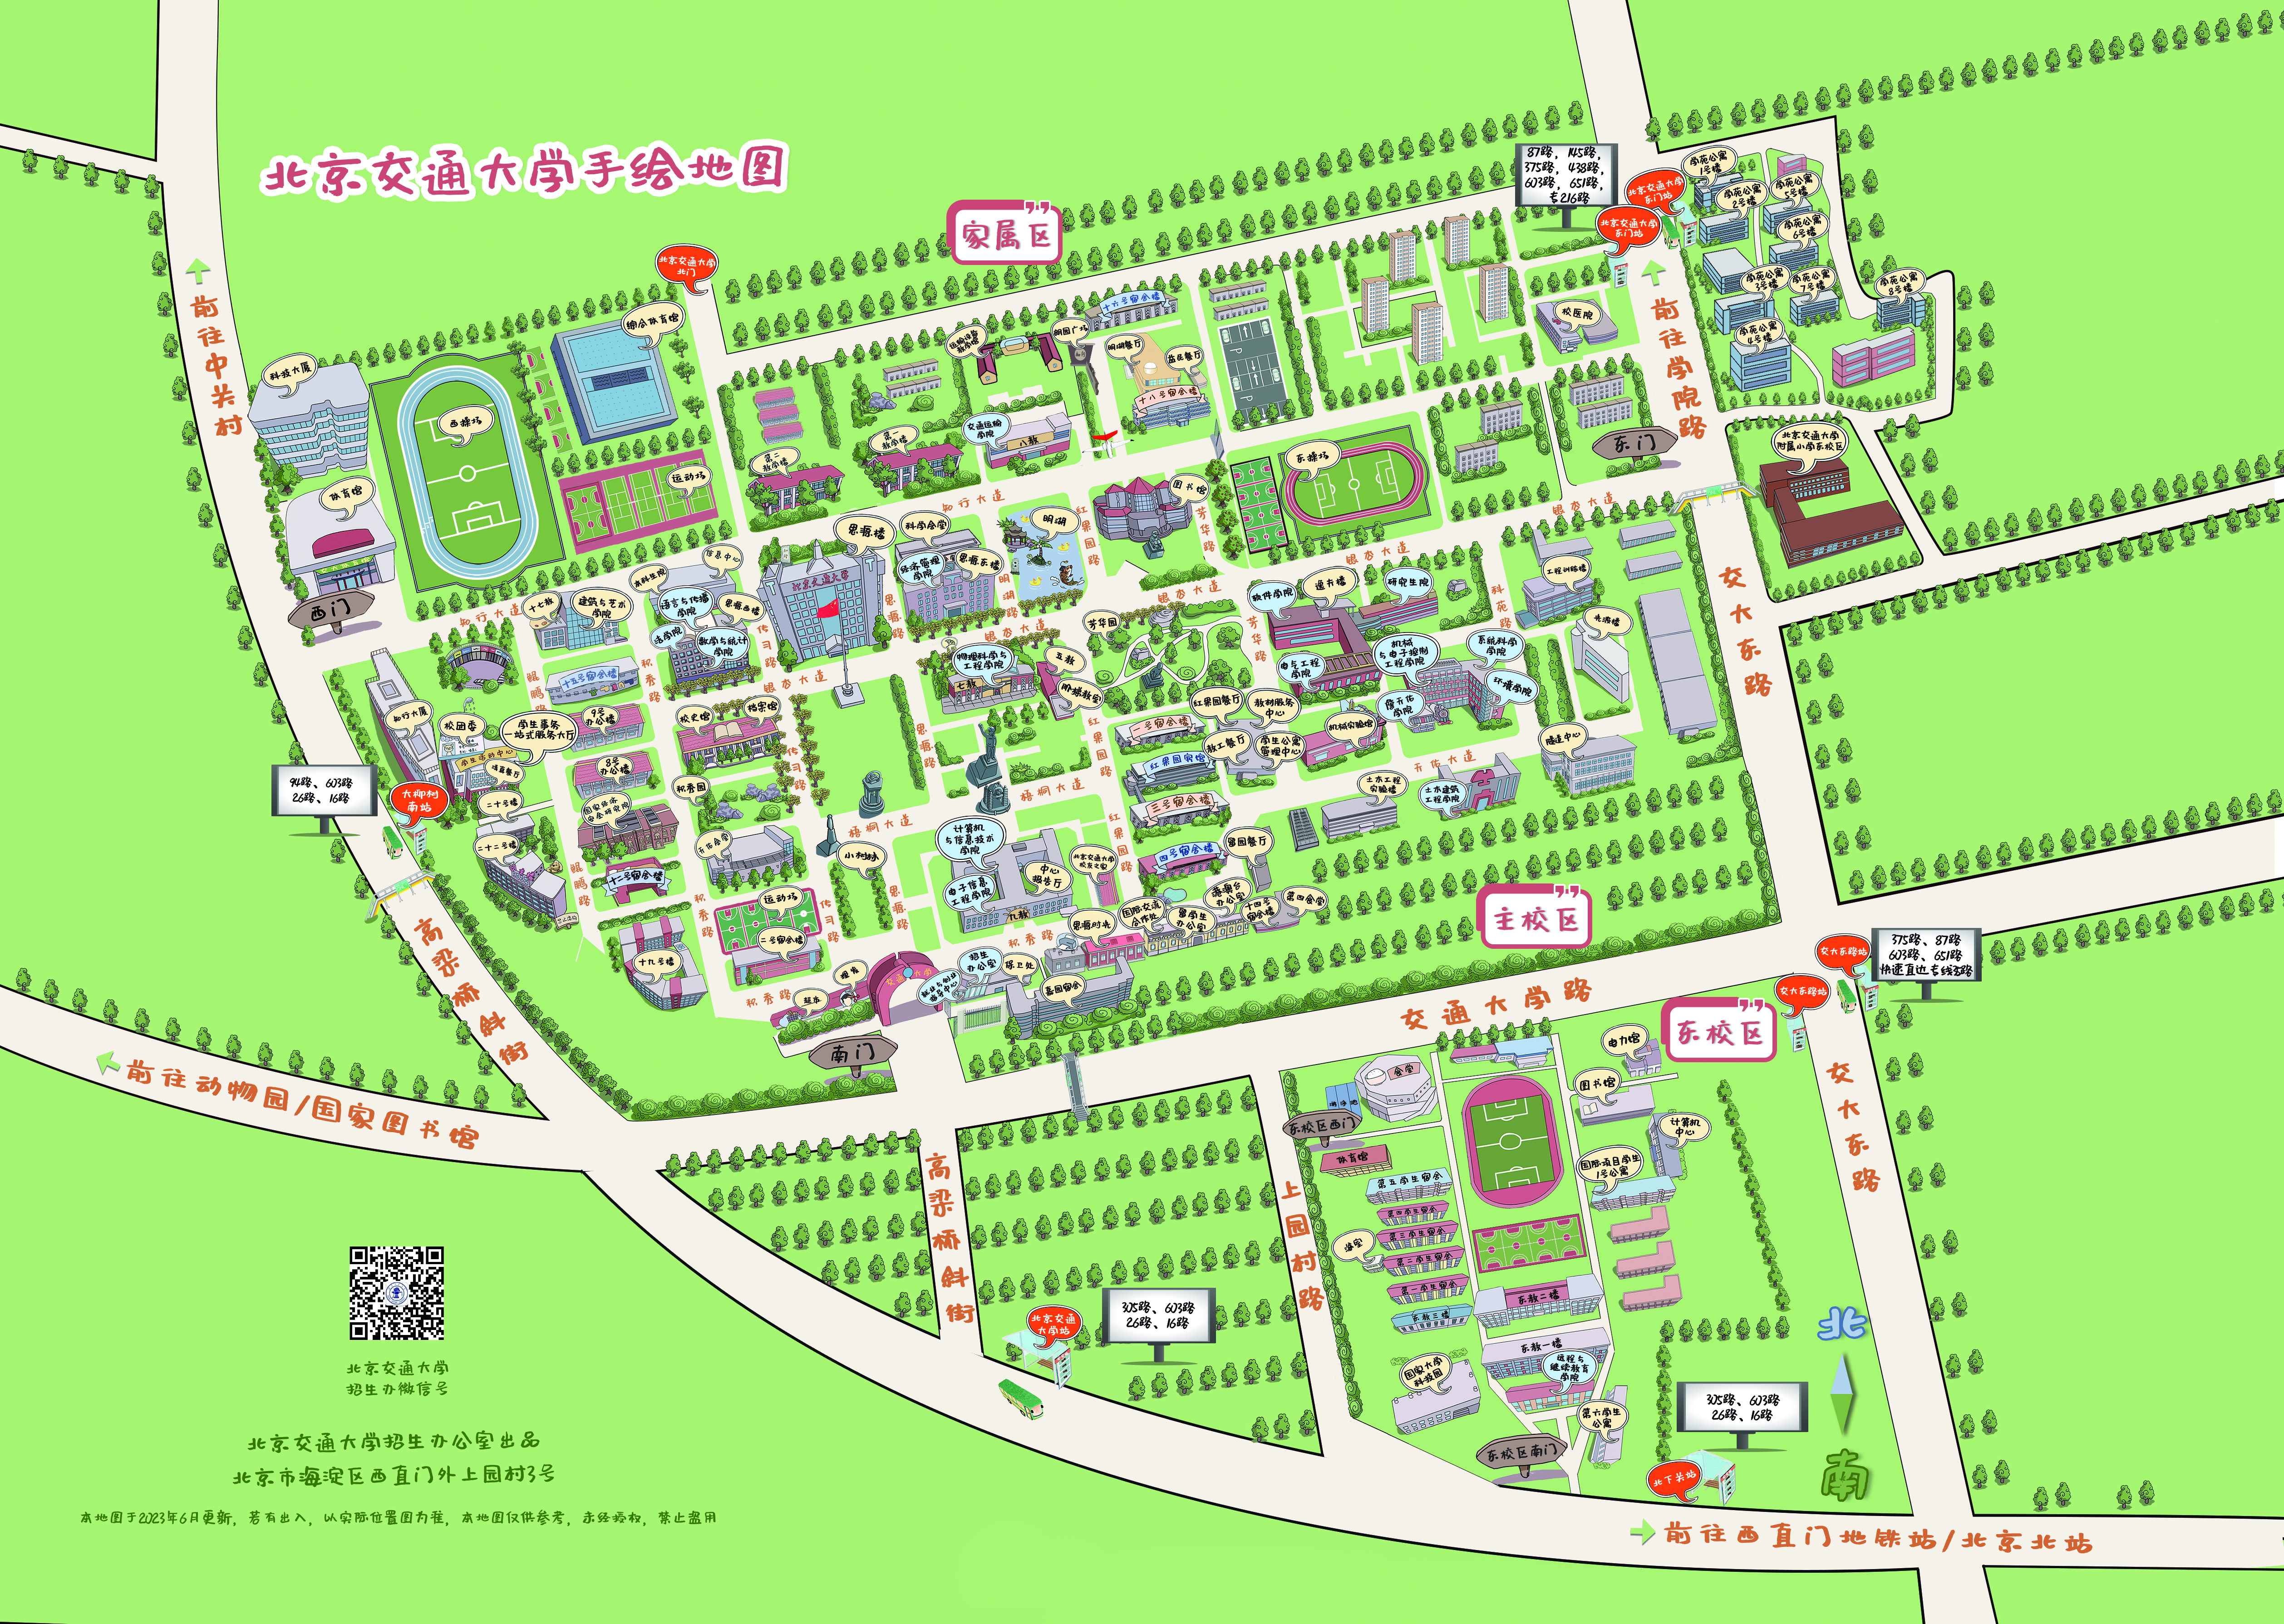 北京交通大学手绘地图(2020版)